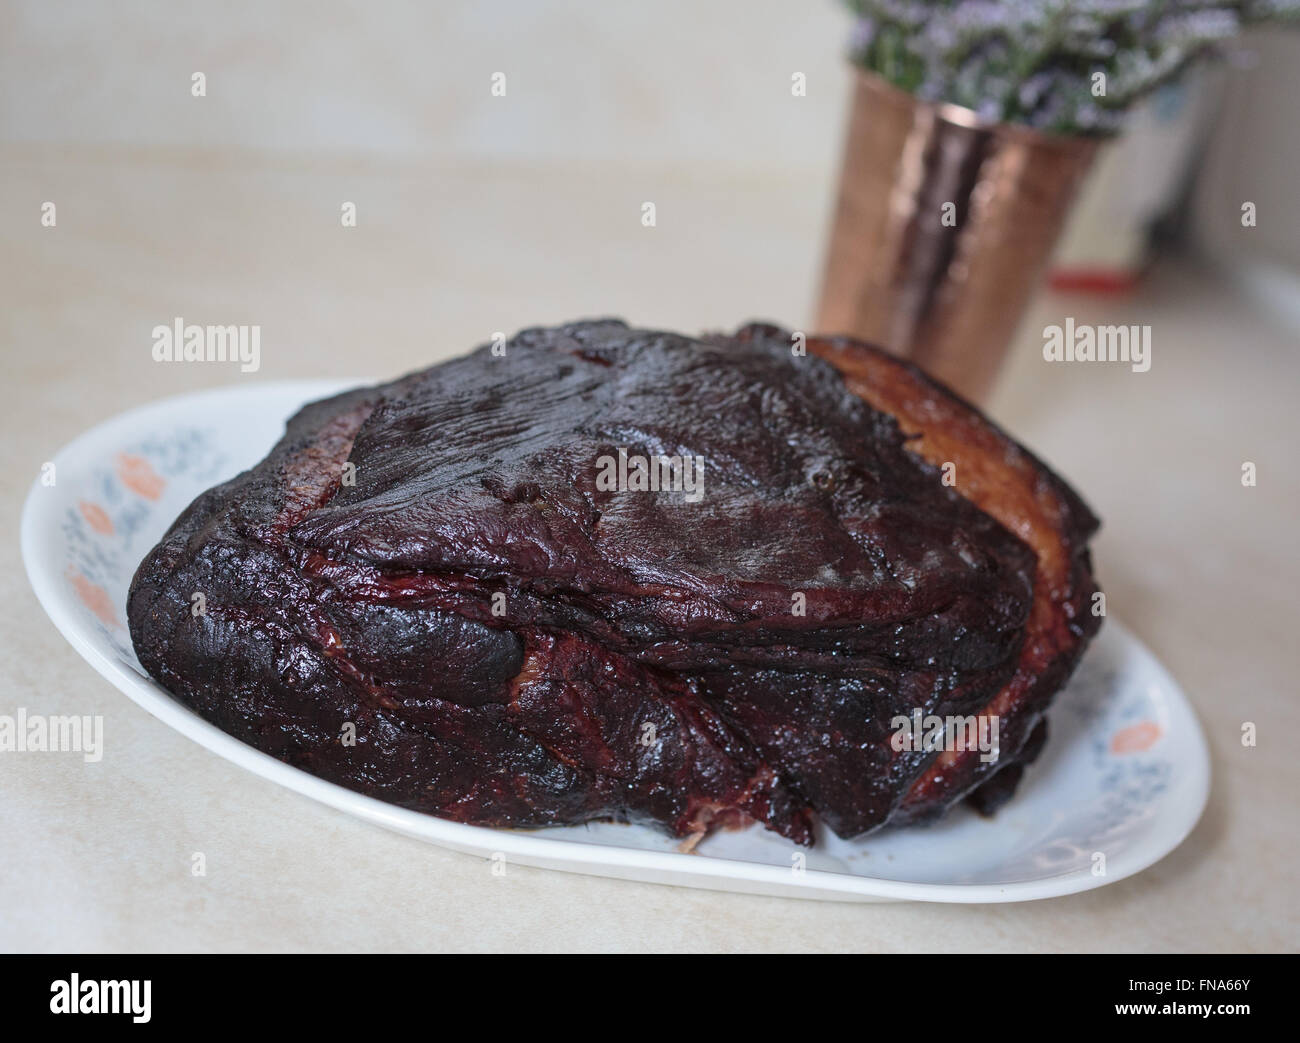 A smoked pork roast Stock Photo